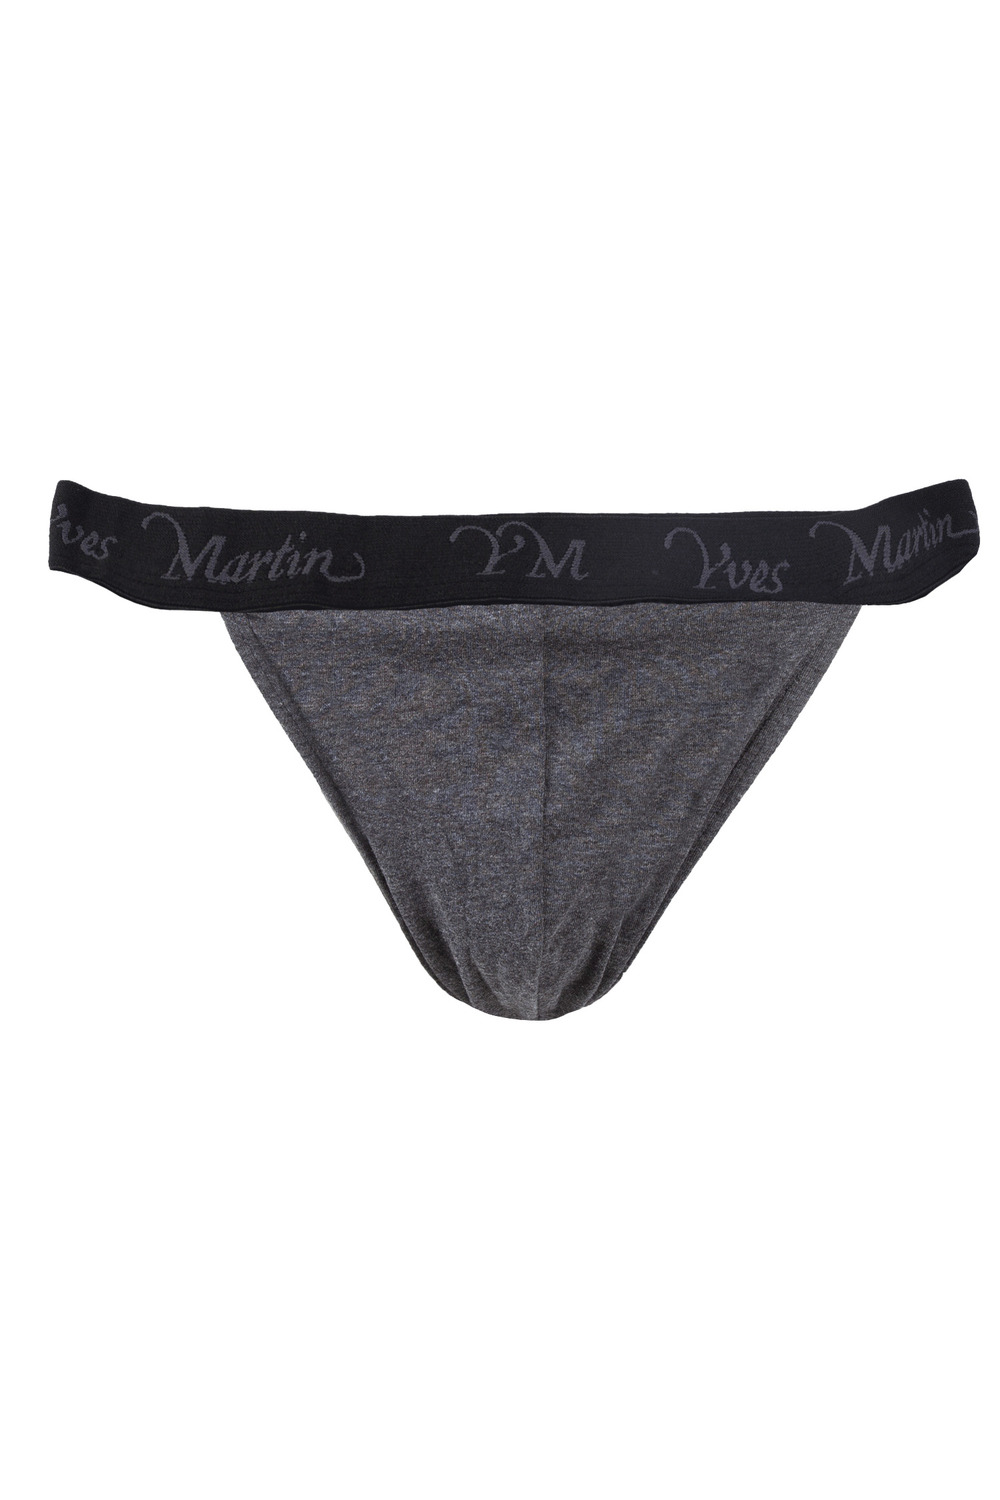 BVD Underwear for Men - 1923  CharmaineZoe's Marvelous Melange